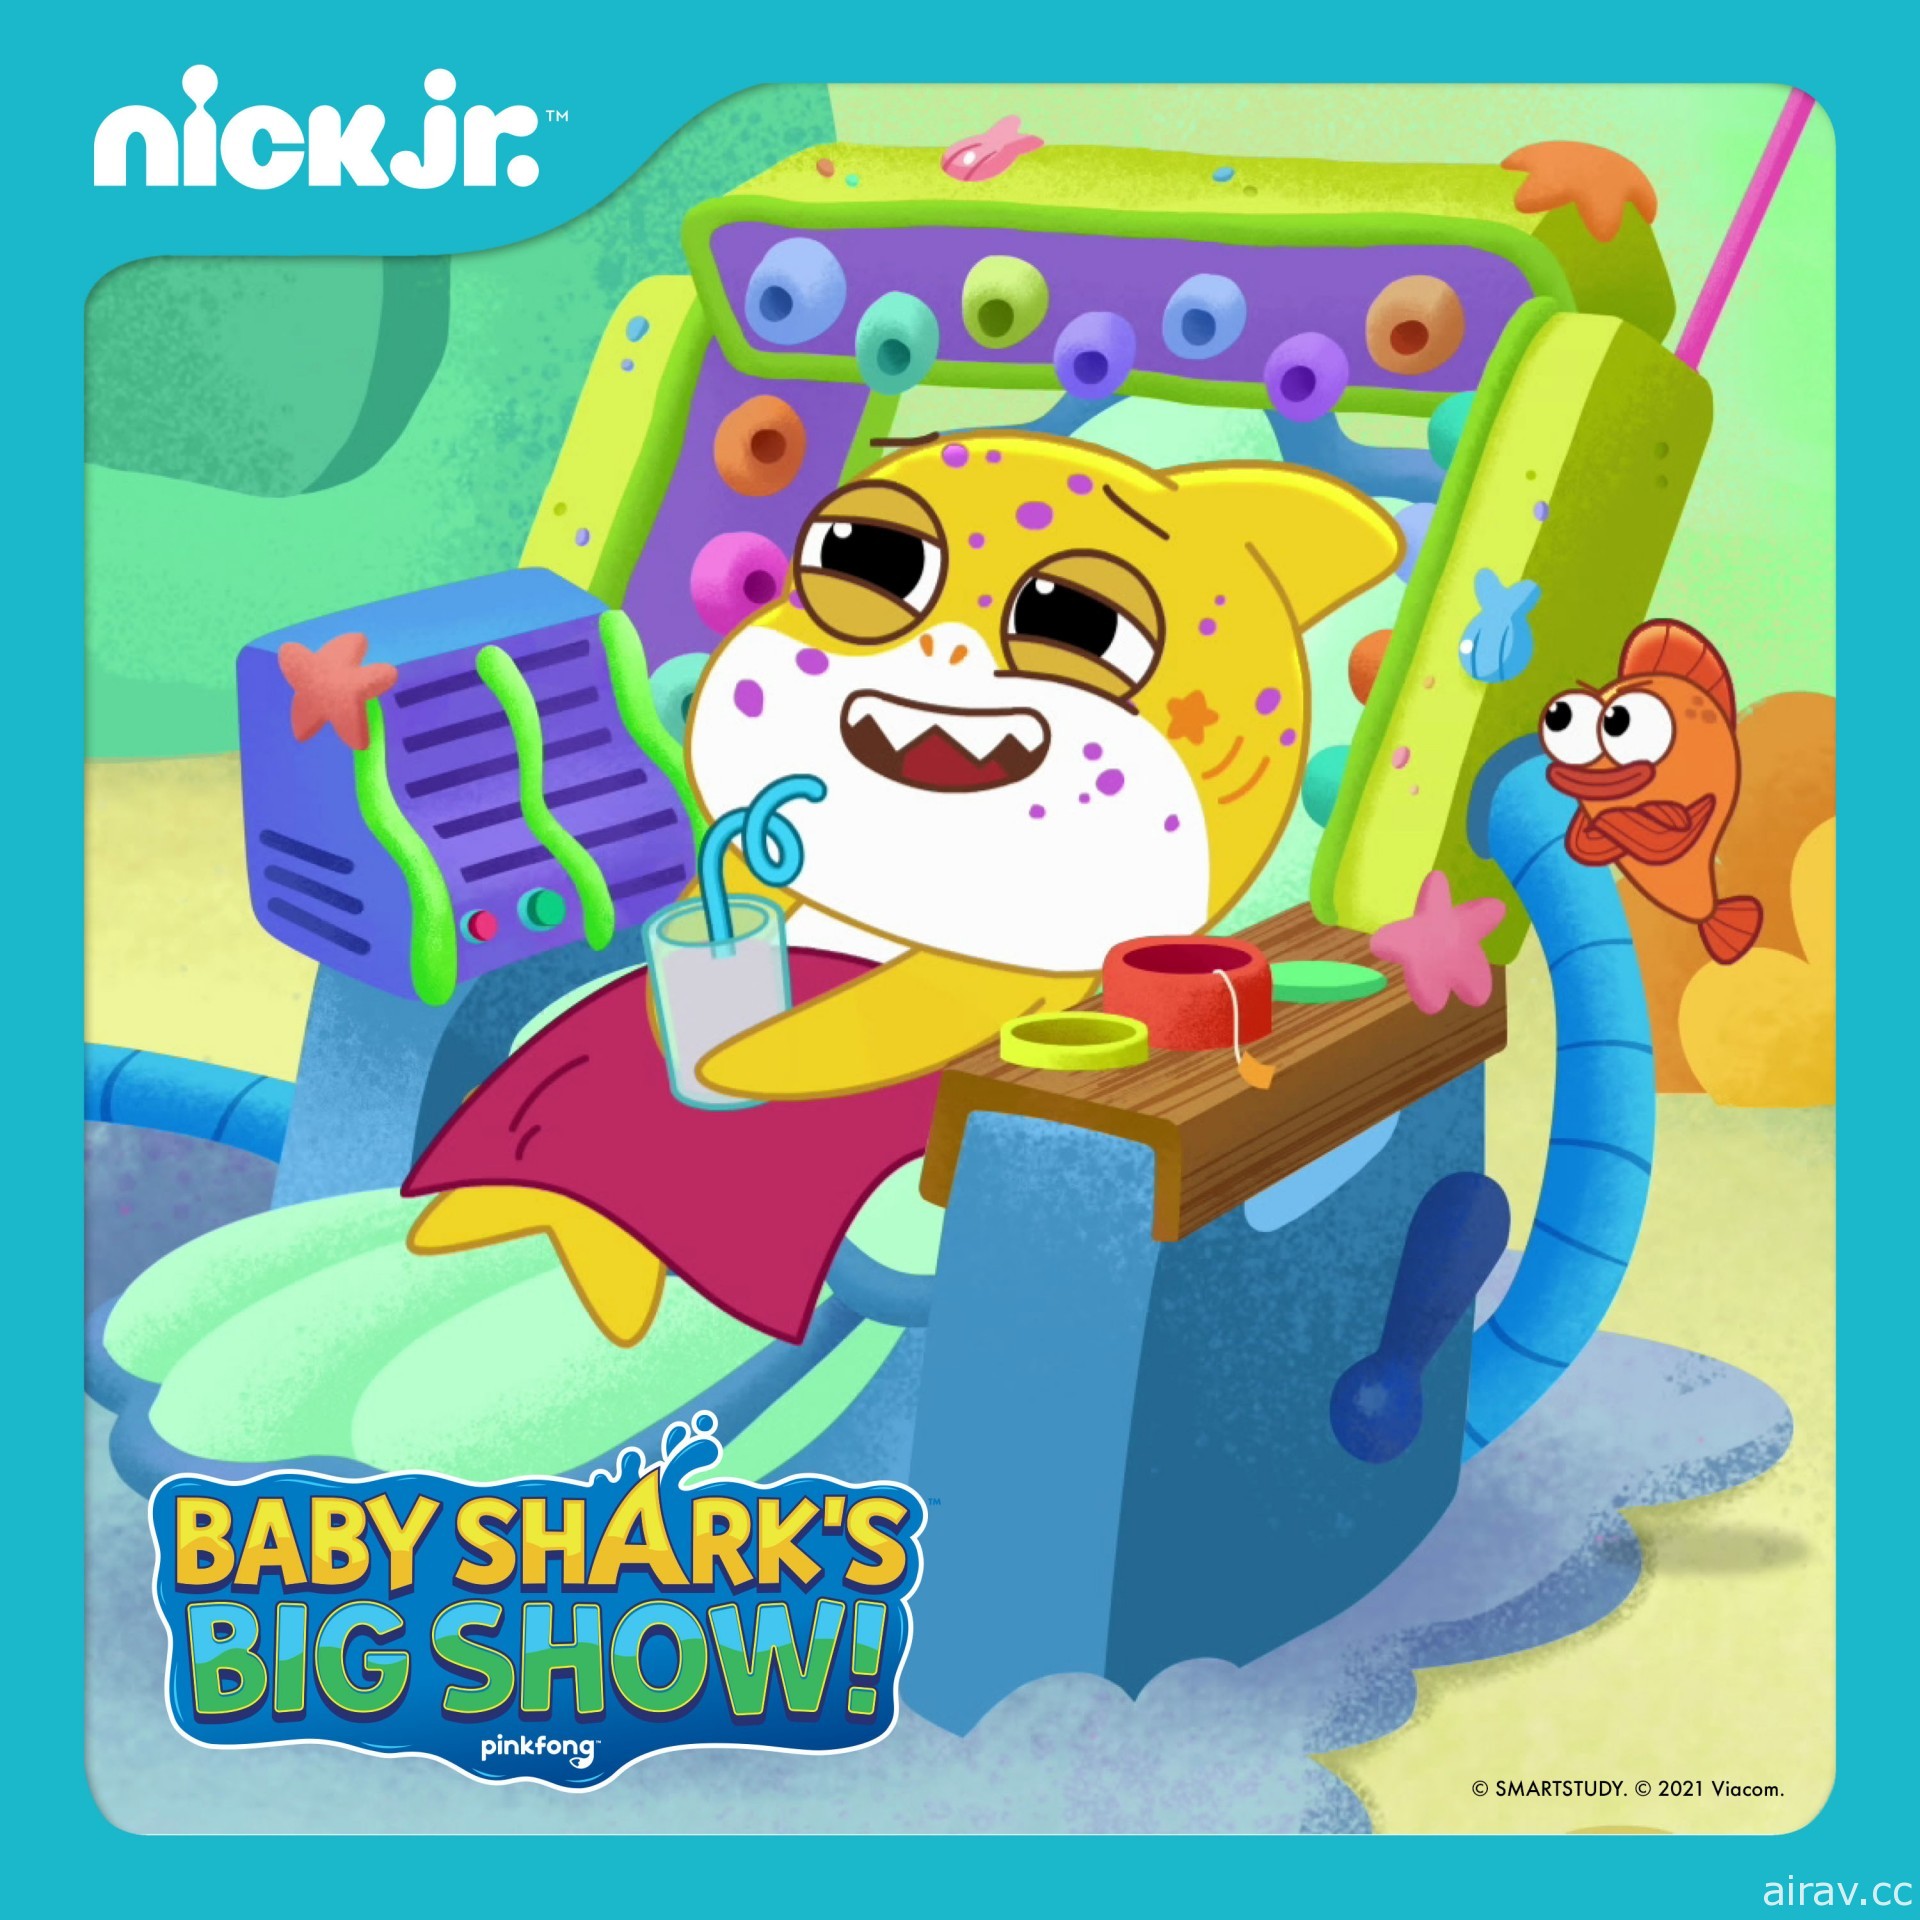 傑德影音宣布 1 月起「尼克兒童頻道」與「Nick Jr. 兒童頻道」將進駐有線電視